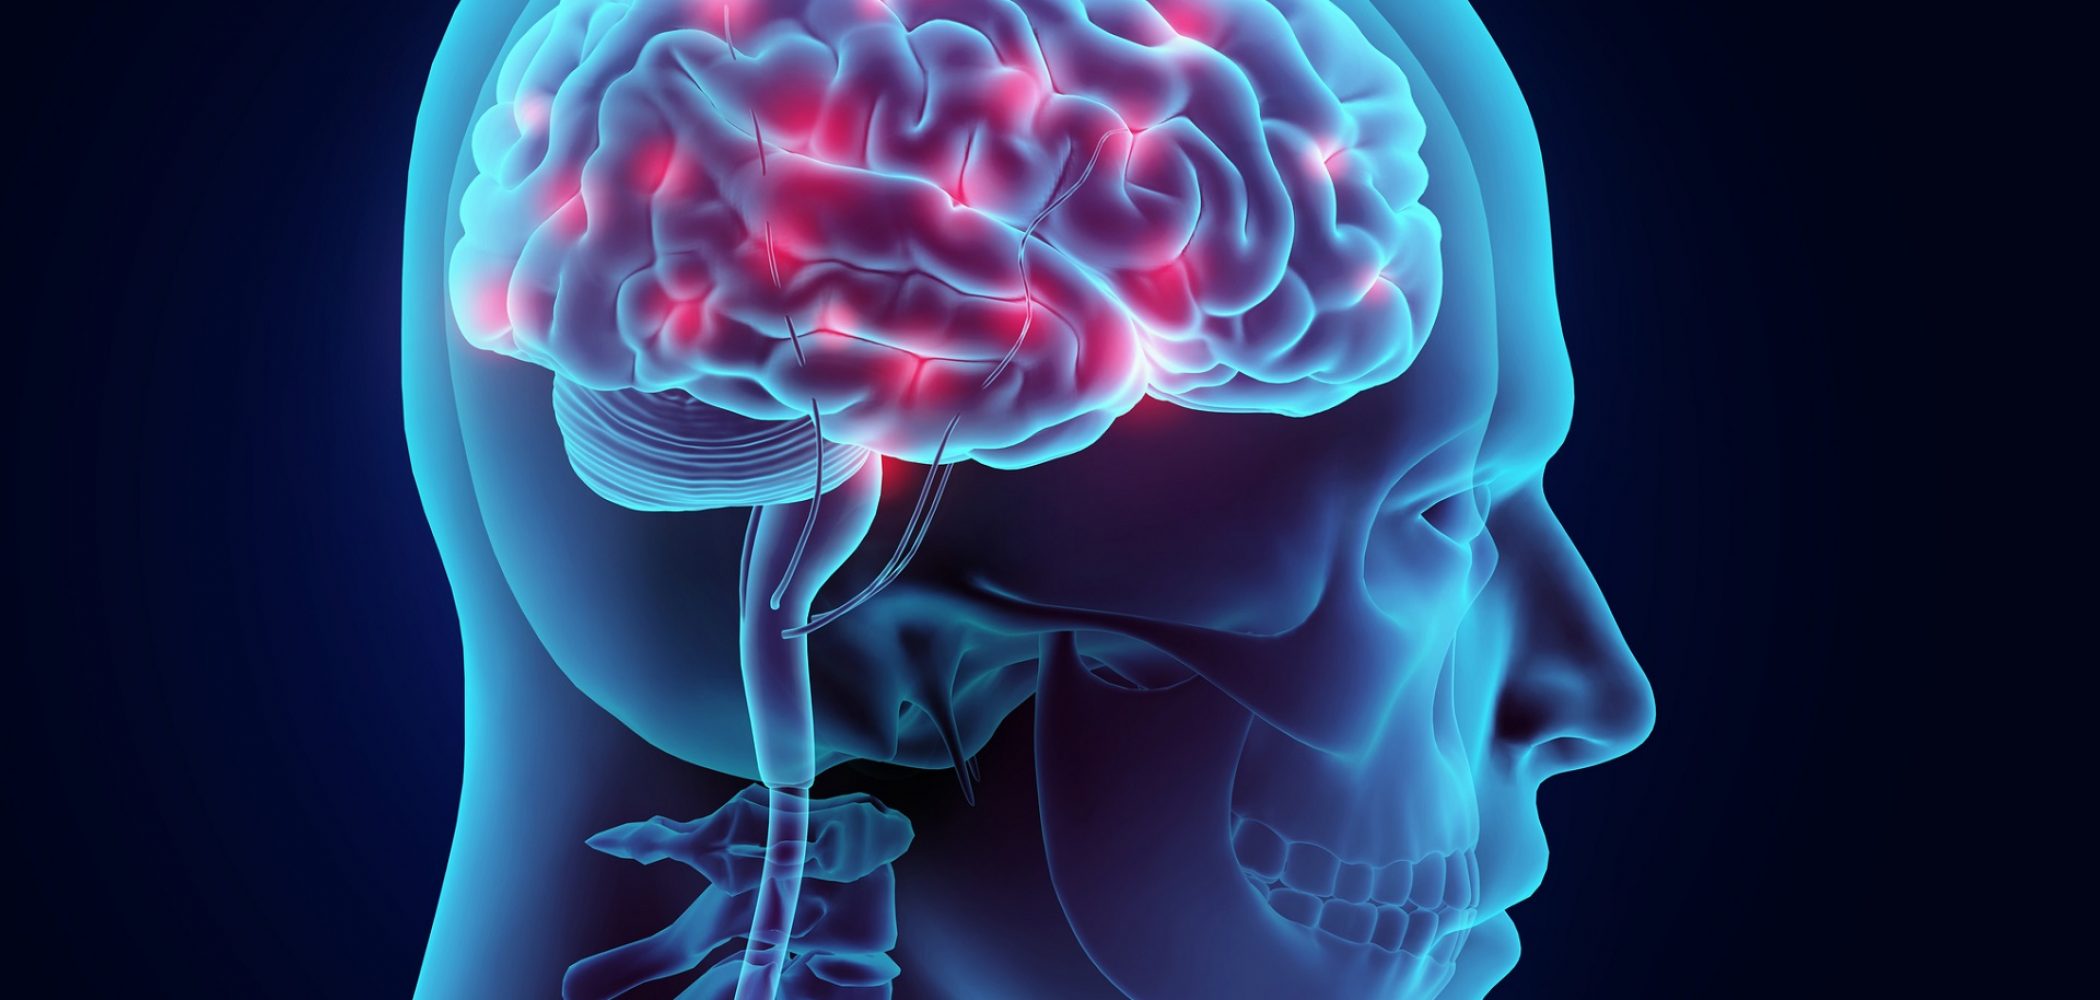 3D illustration brain nervous system active, medical concept.